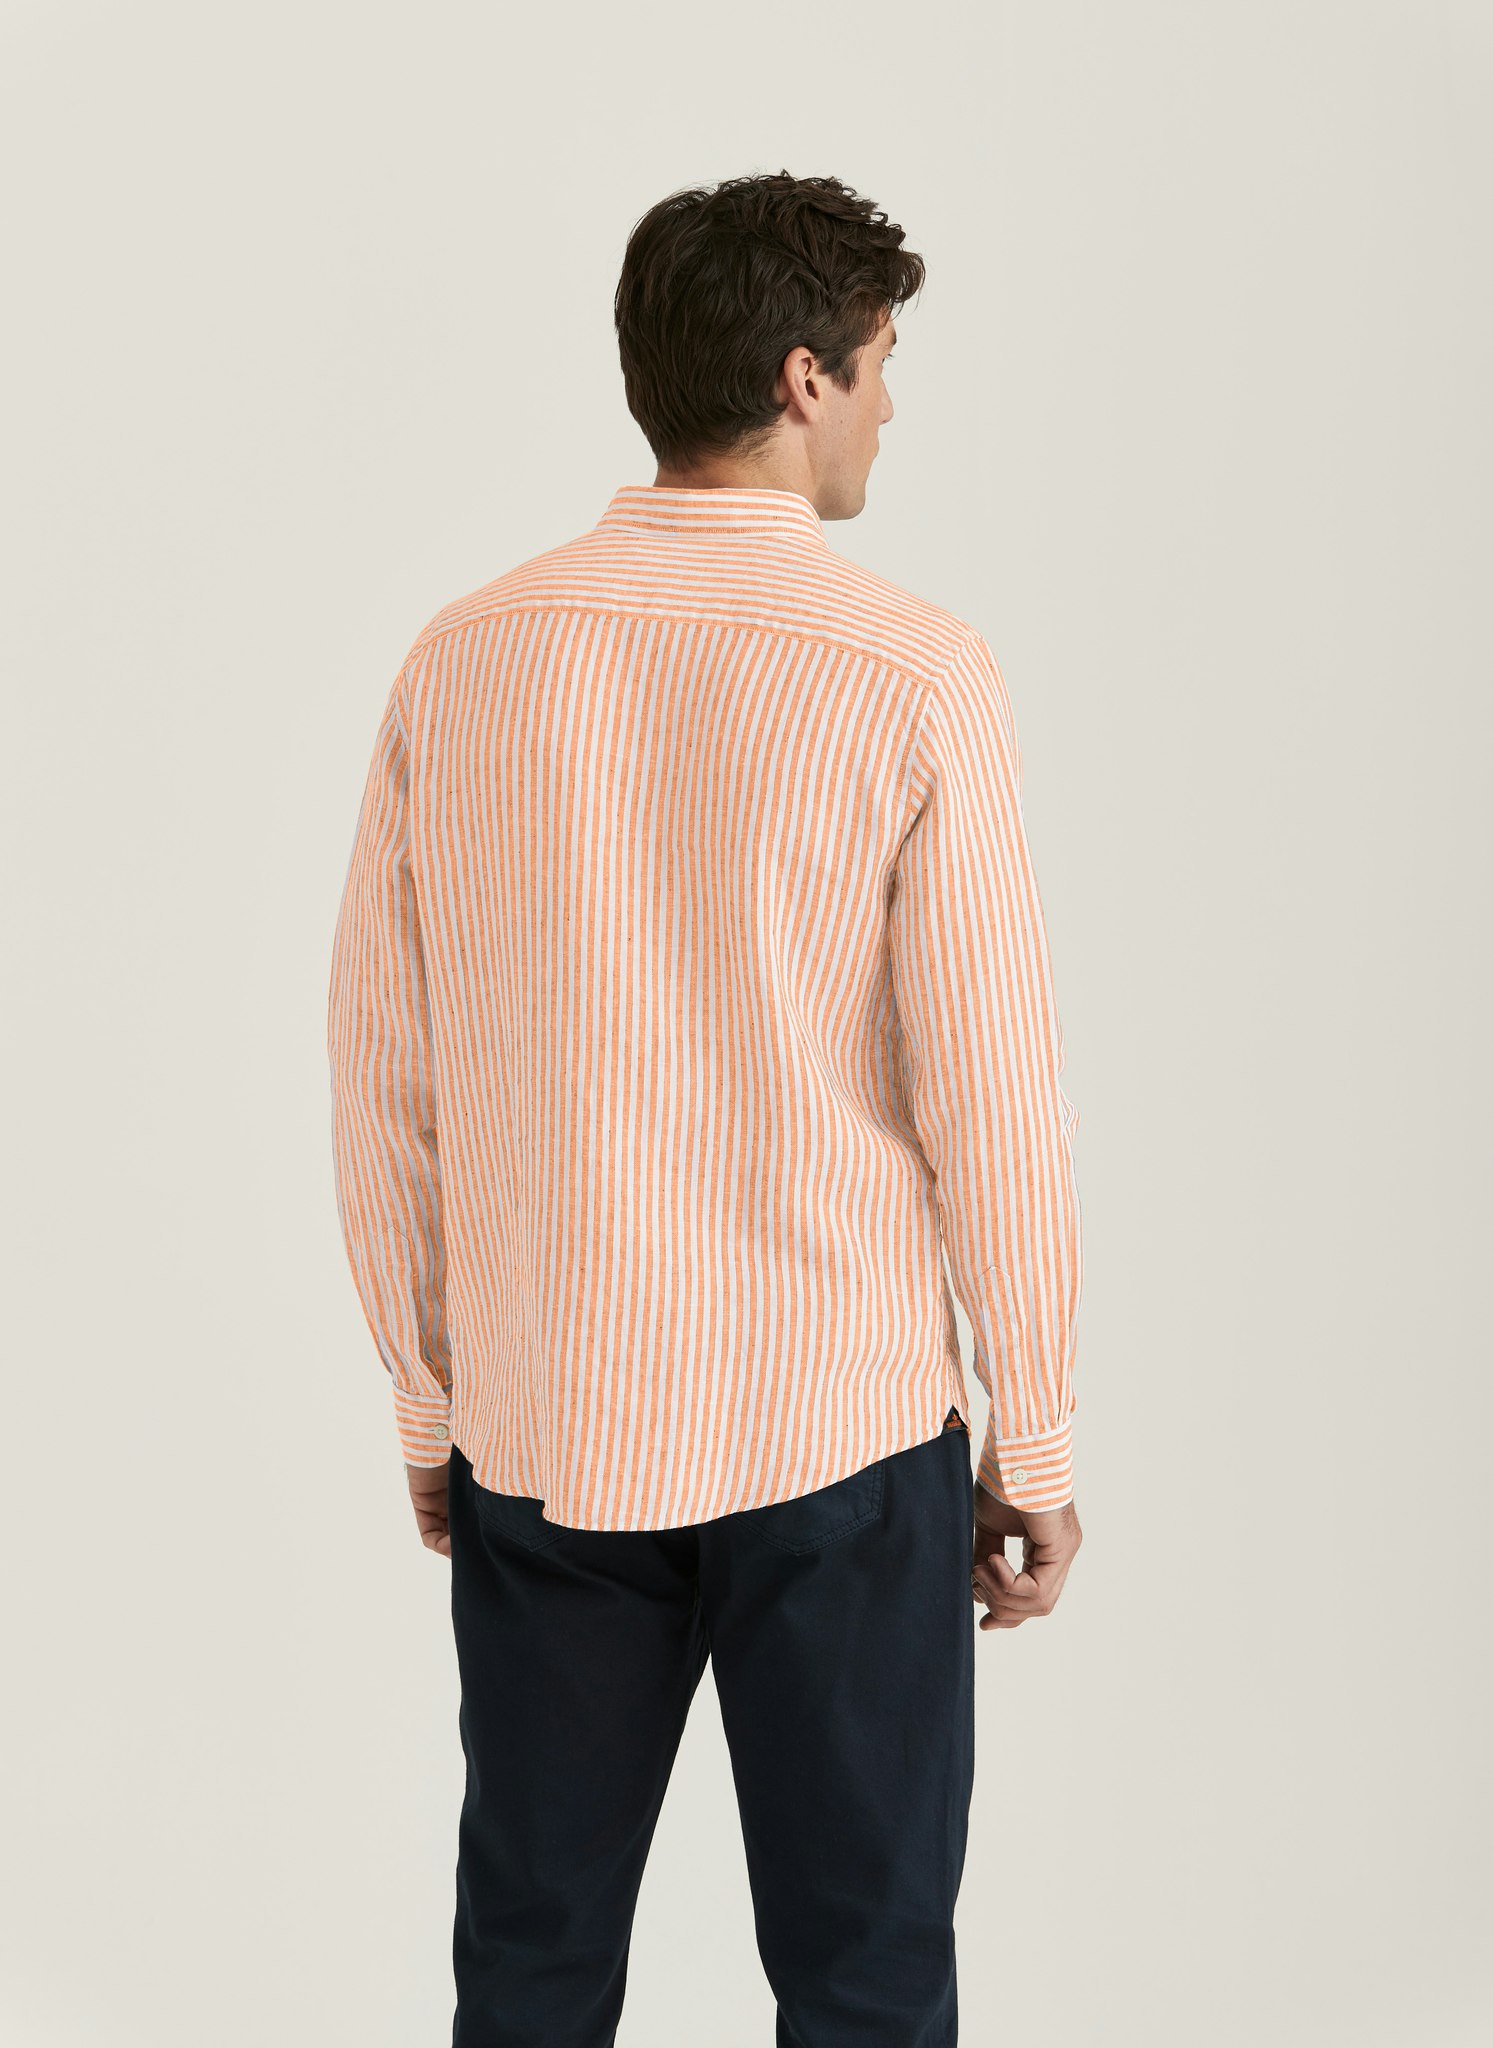 Morris - Douglas Linen Stripe, Orange